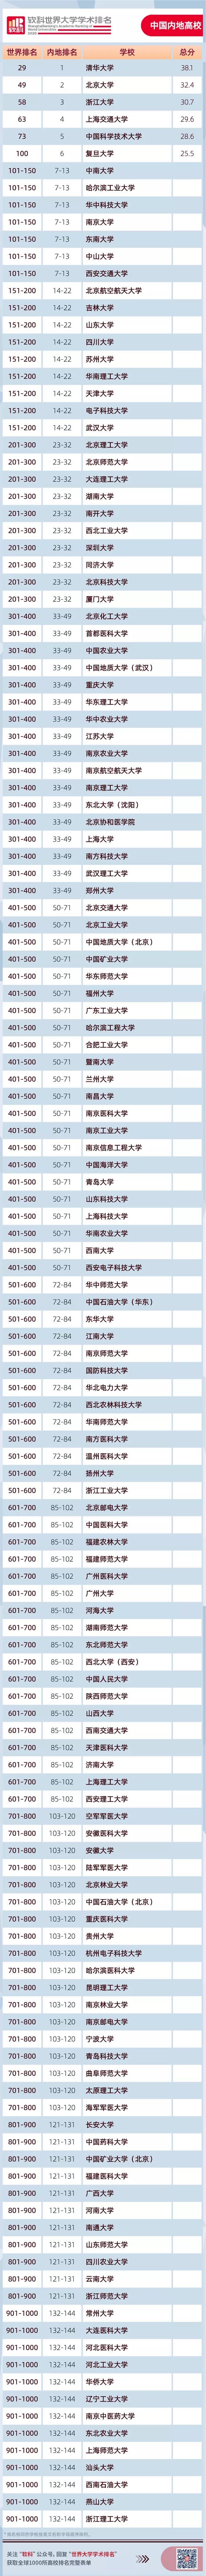 2020年复旦版医院排_2020年上海高校排名公布,榜首不是复旦,上